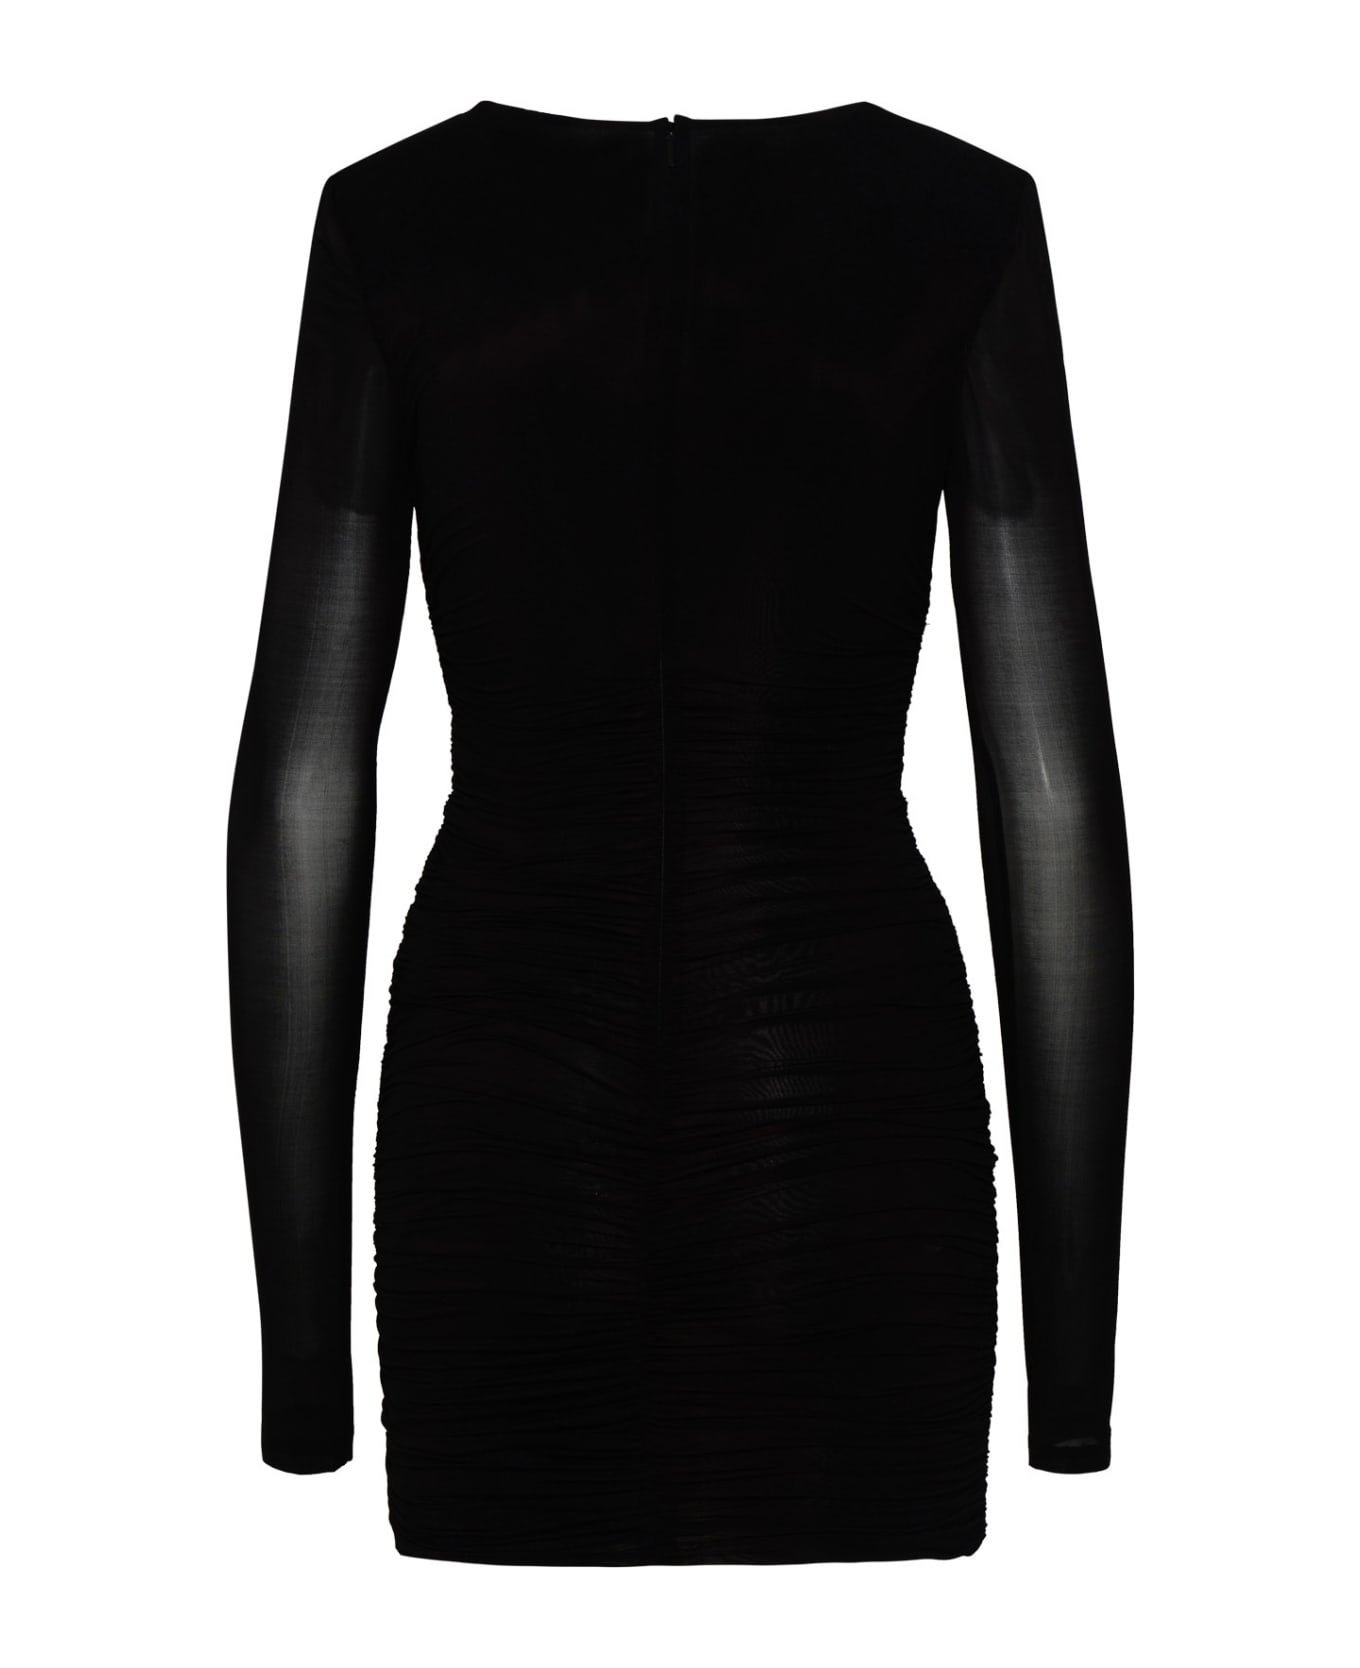 Saint Laurent Black Cupro Blend Dress - Black